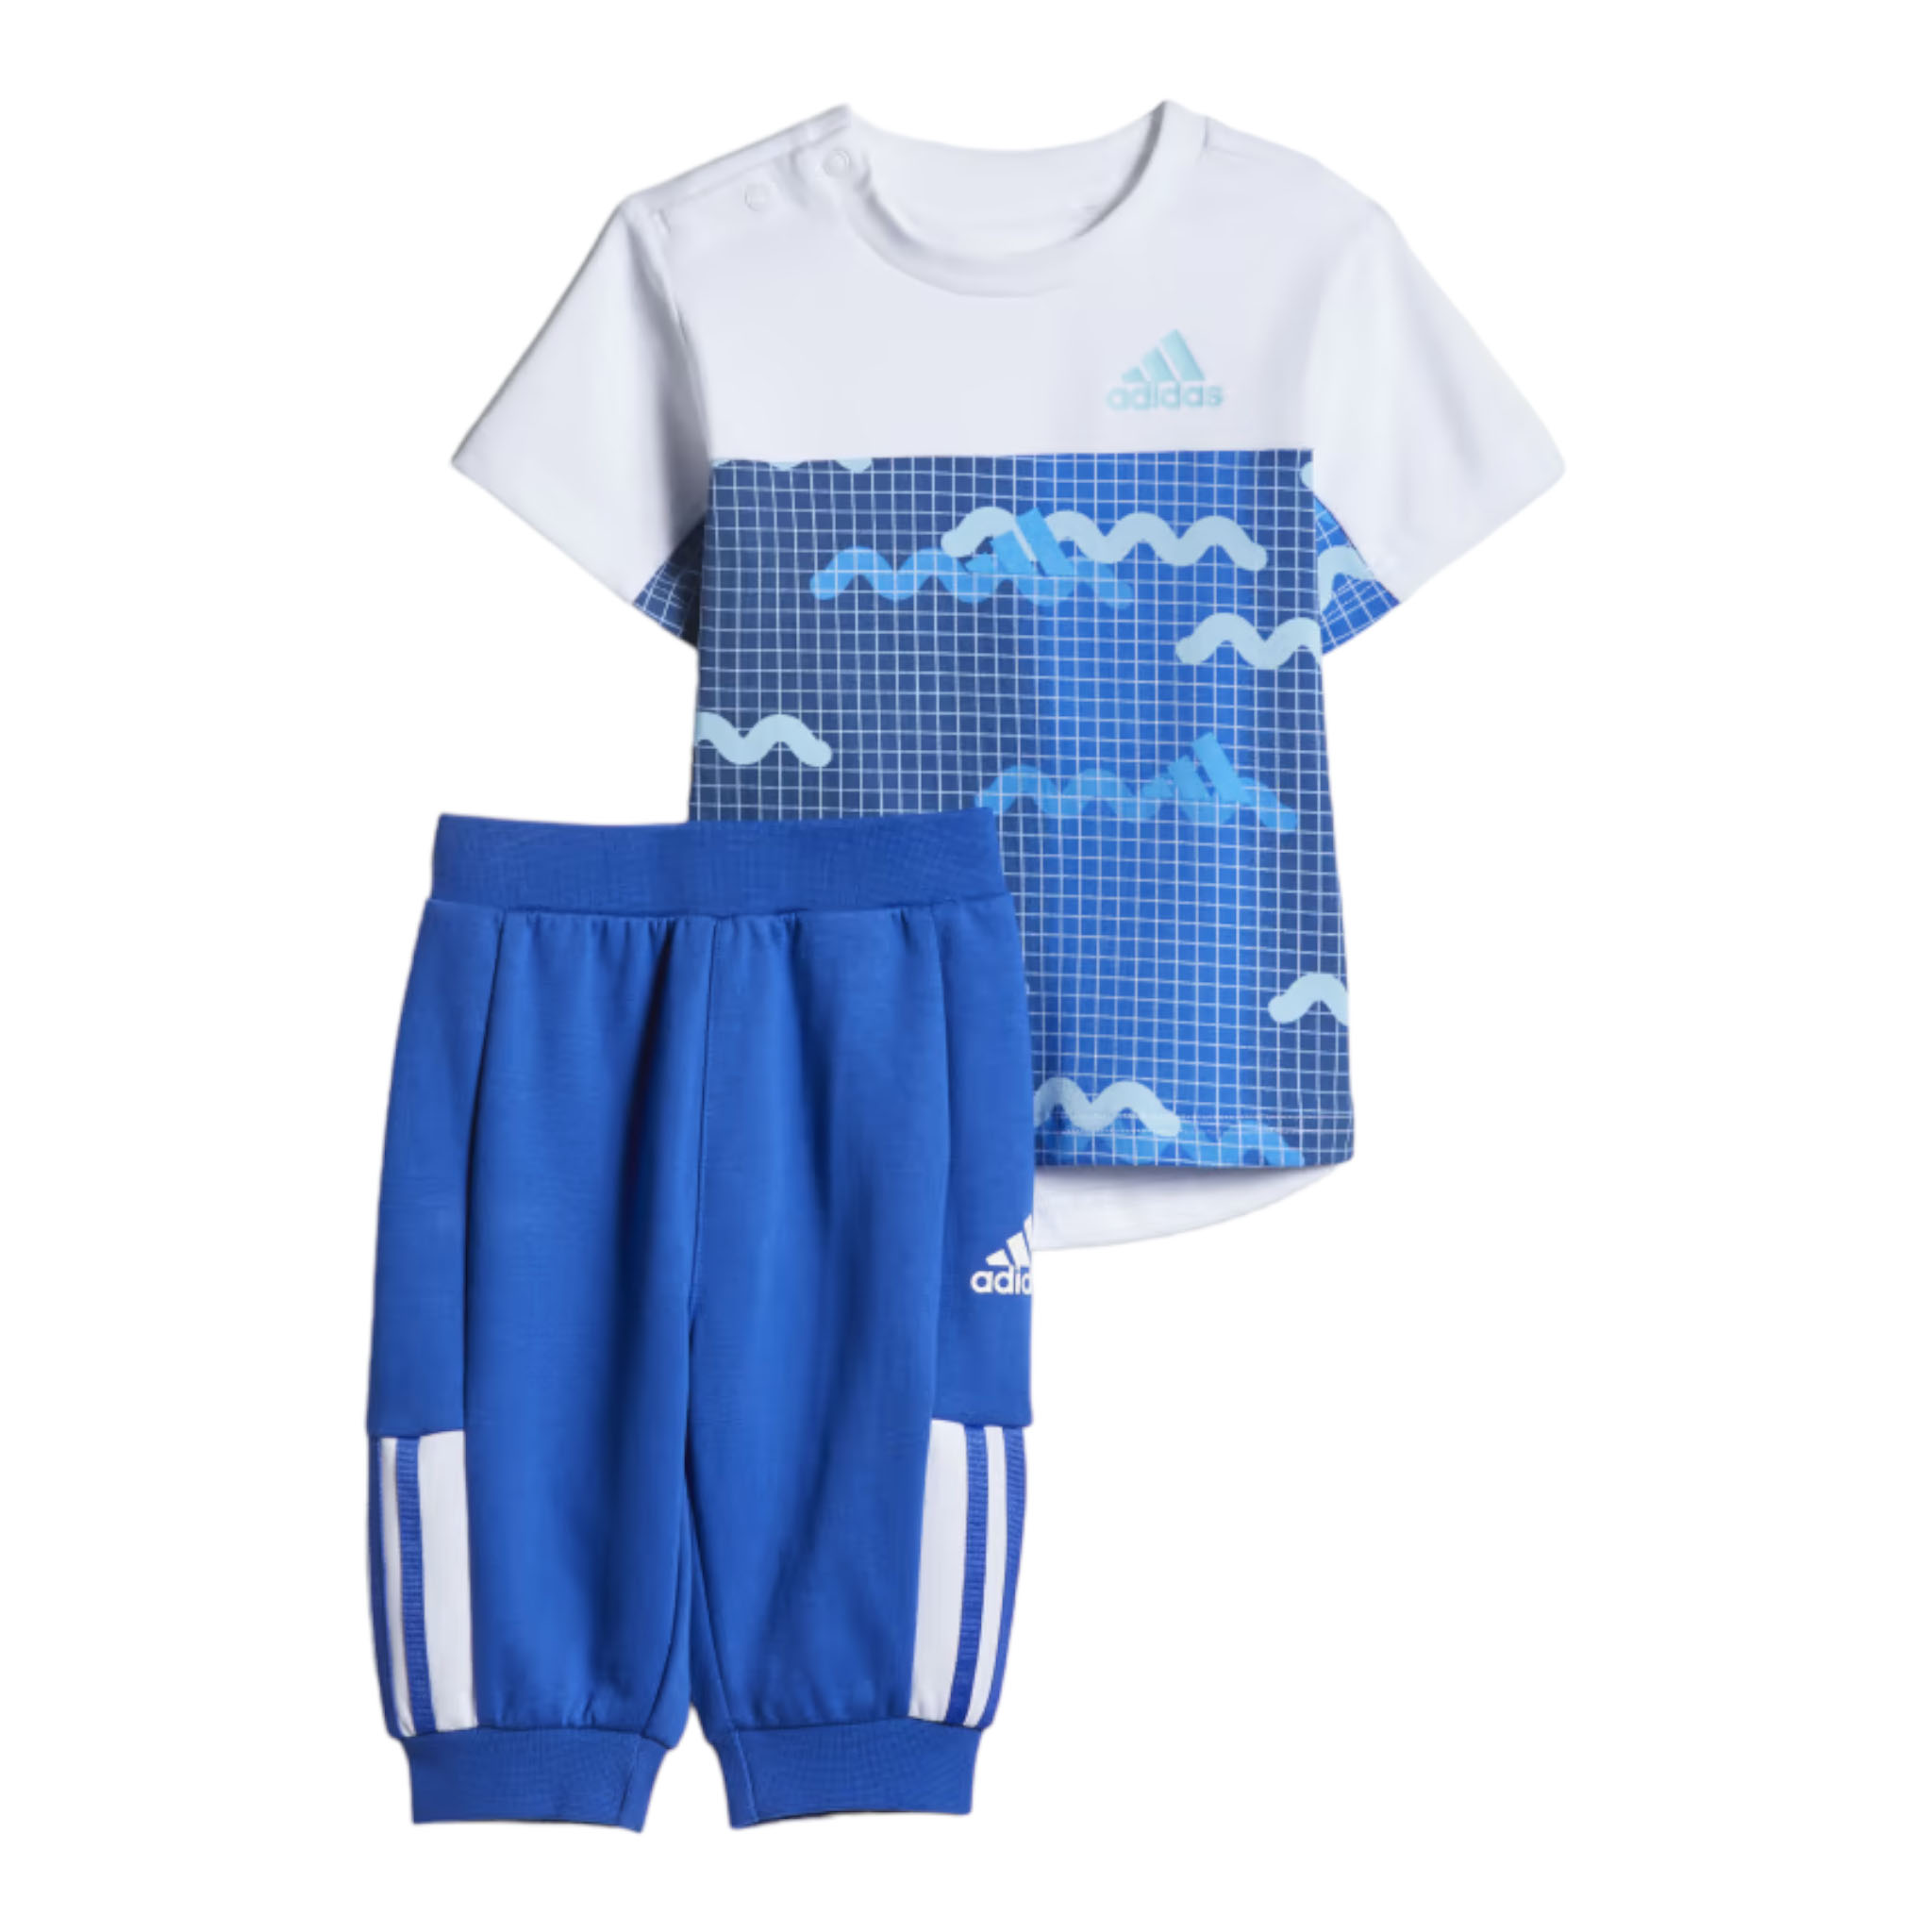 Спортивный костюм Adidas Graphic 3/4, белый/голубой